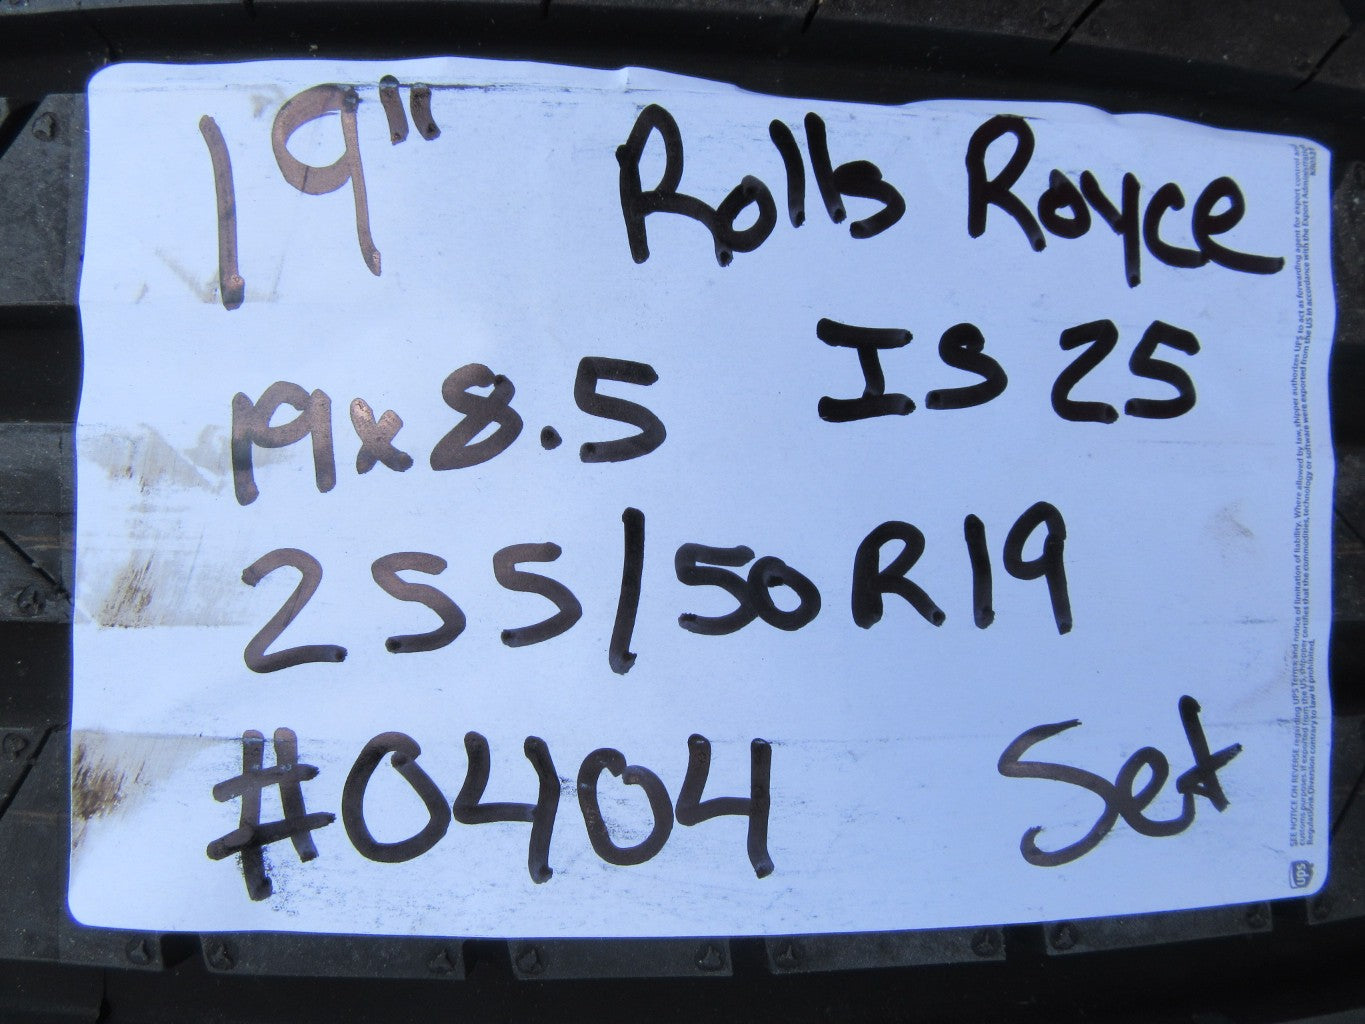 19" Rolls Royce Ghost wheels rims tires set of 4 #0404